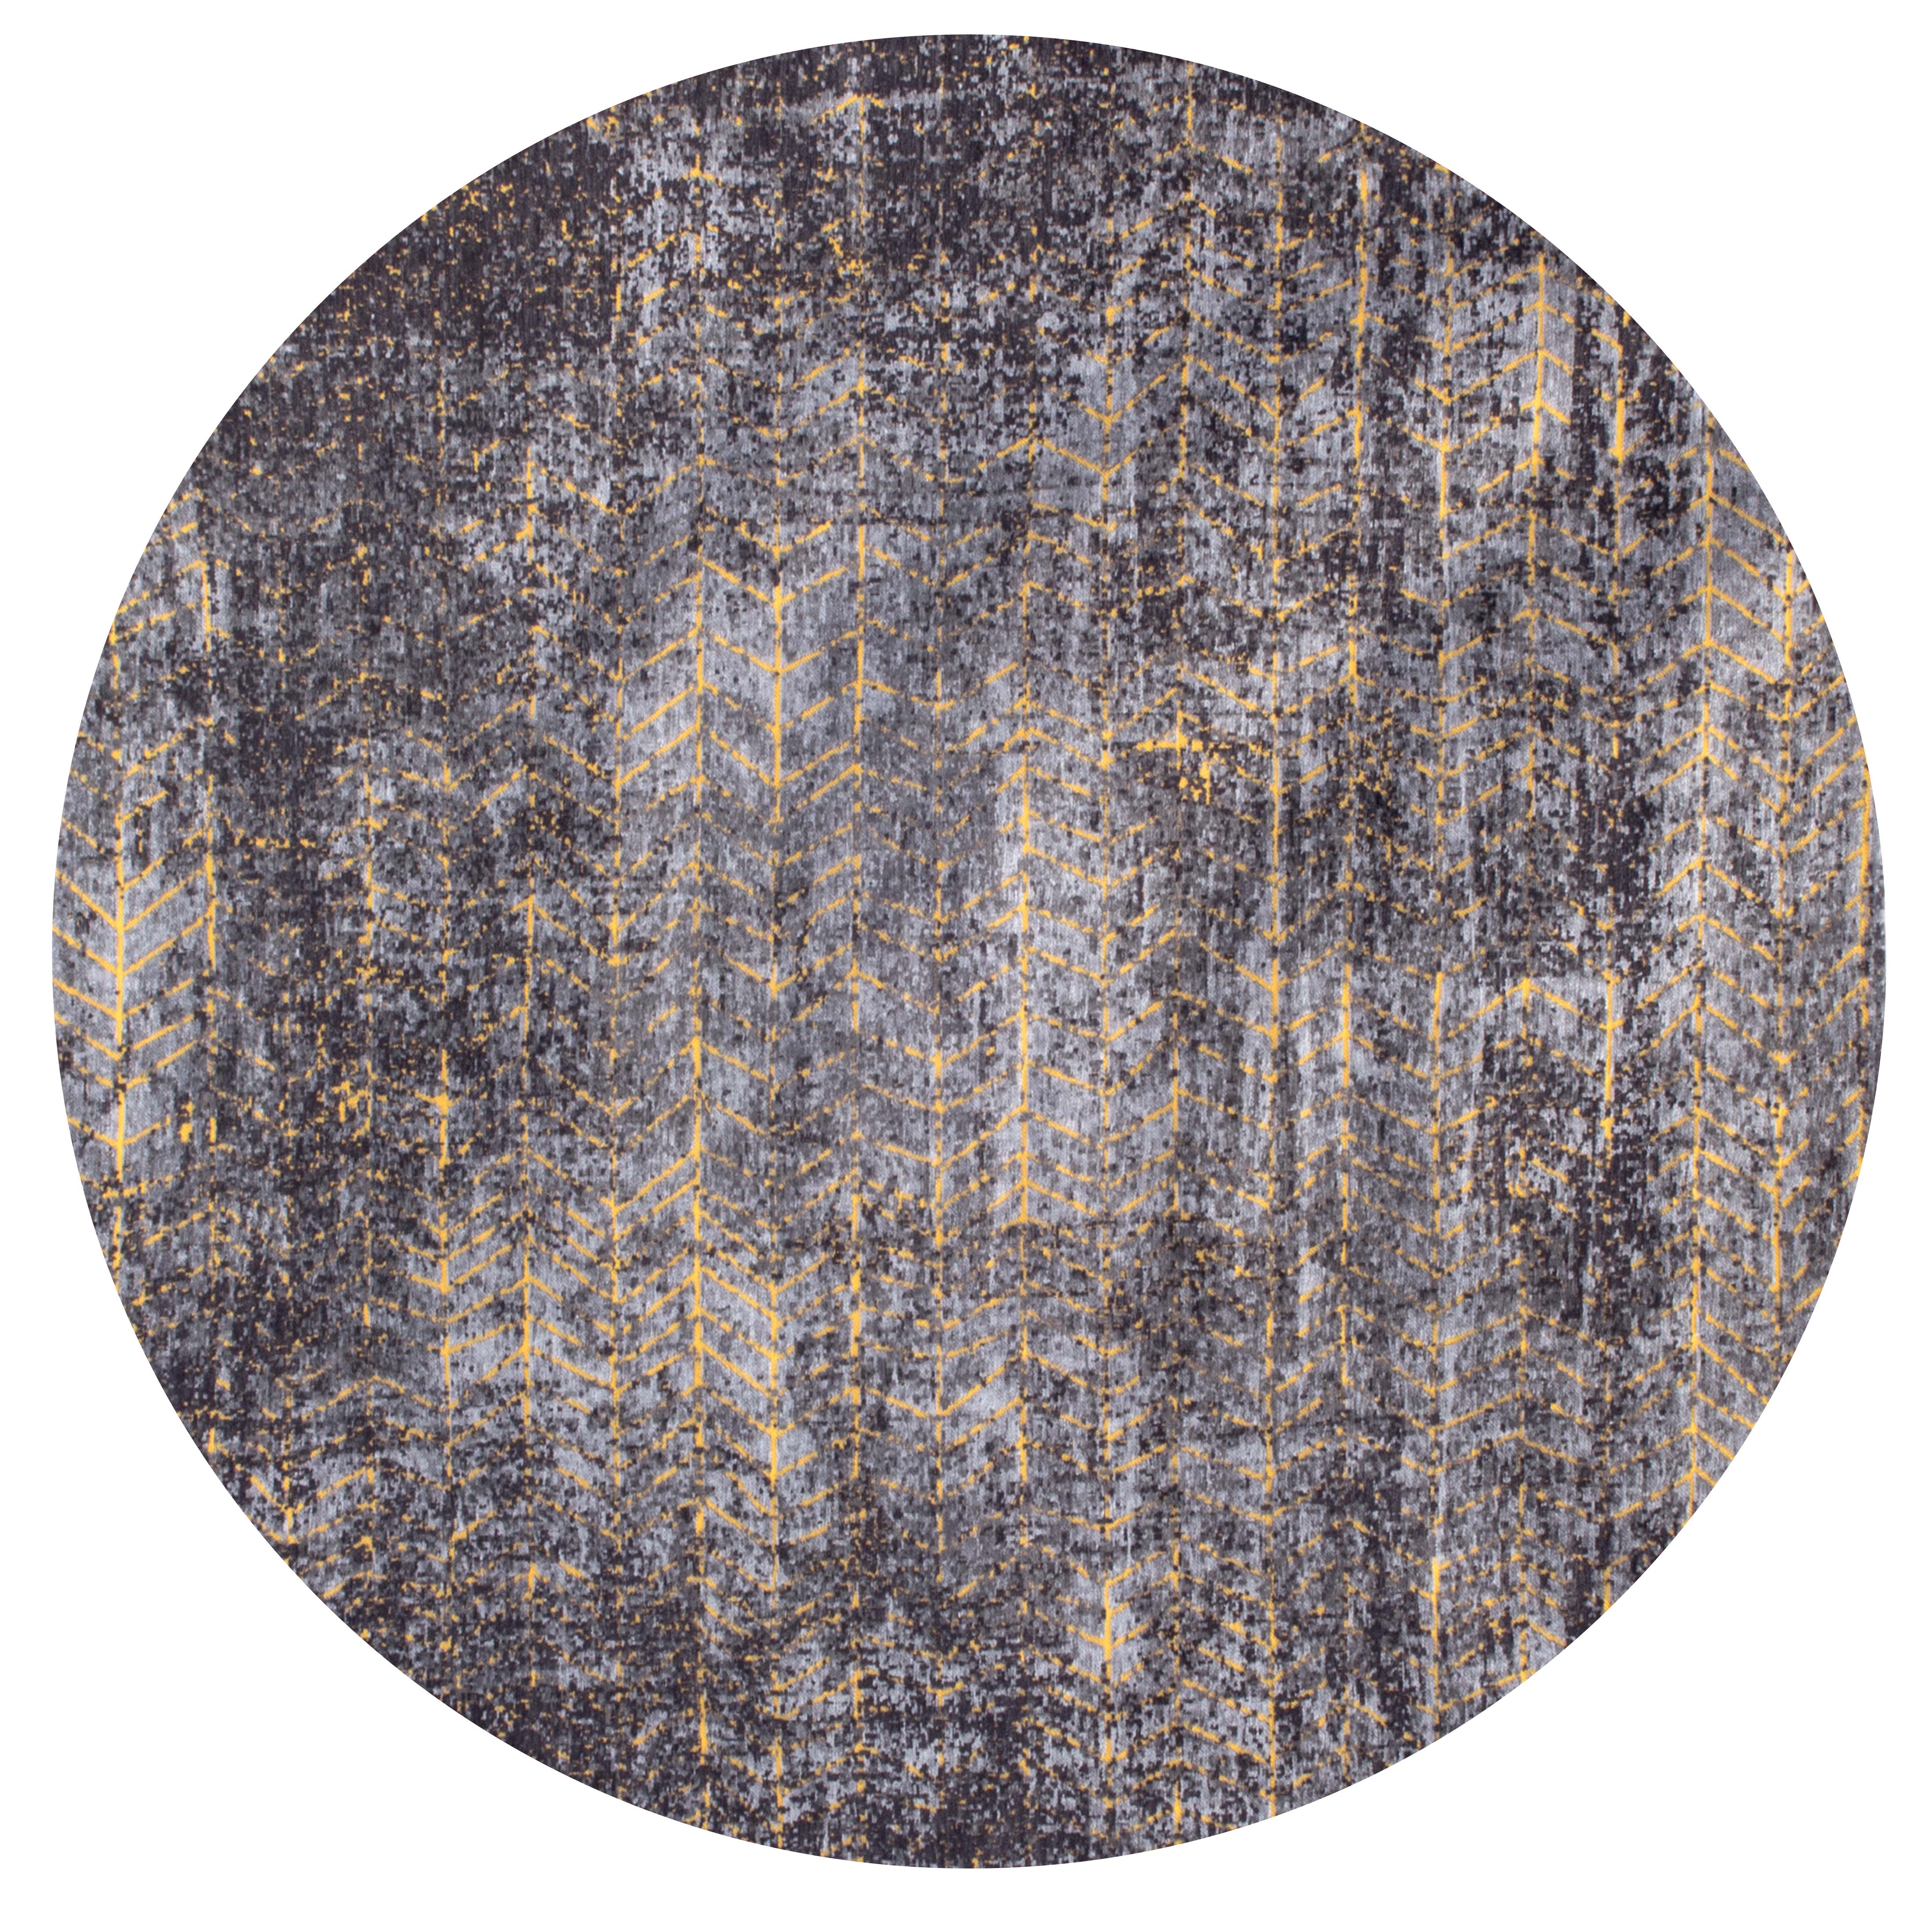 Grey and gold abstract circle rug